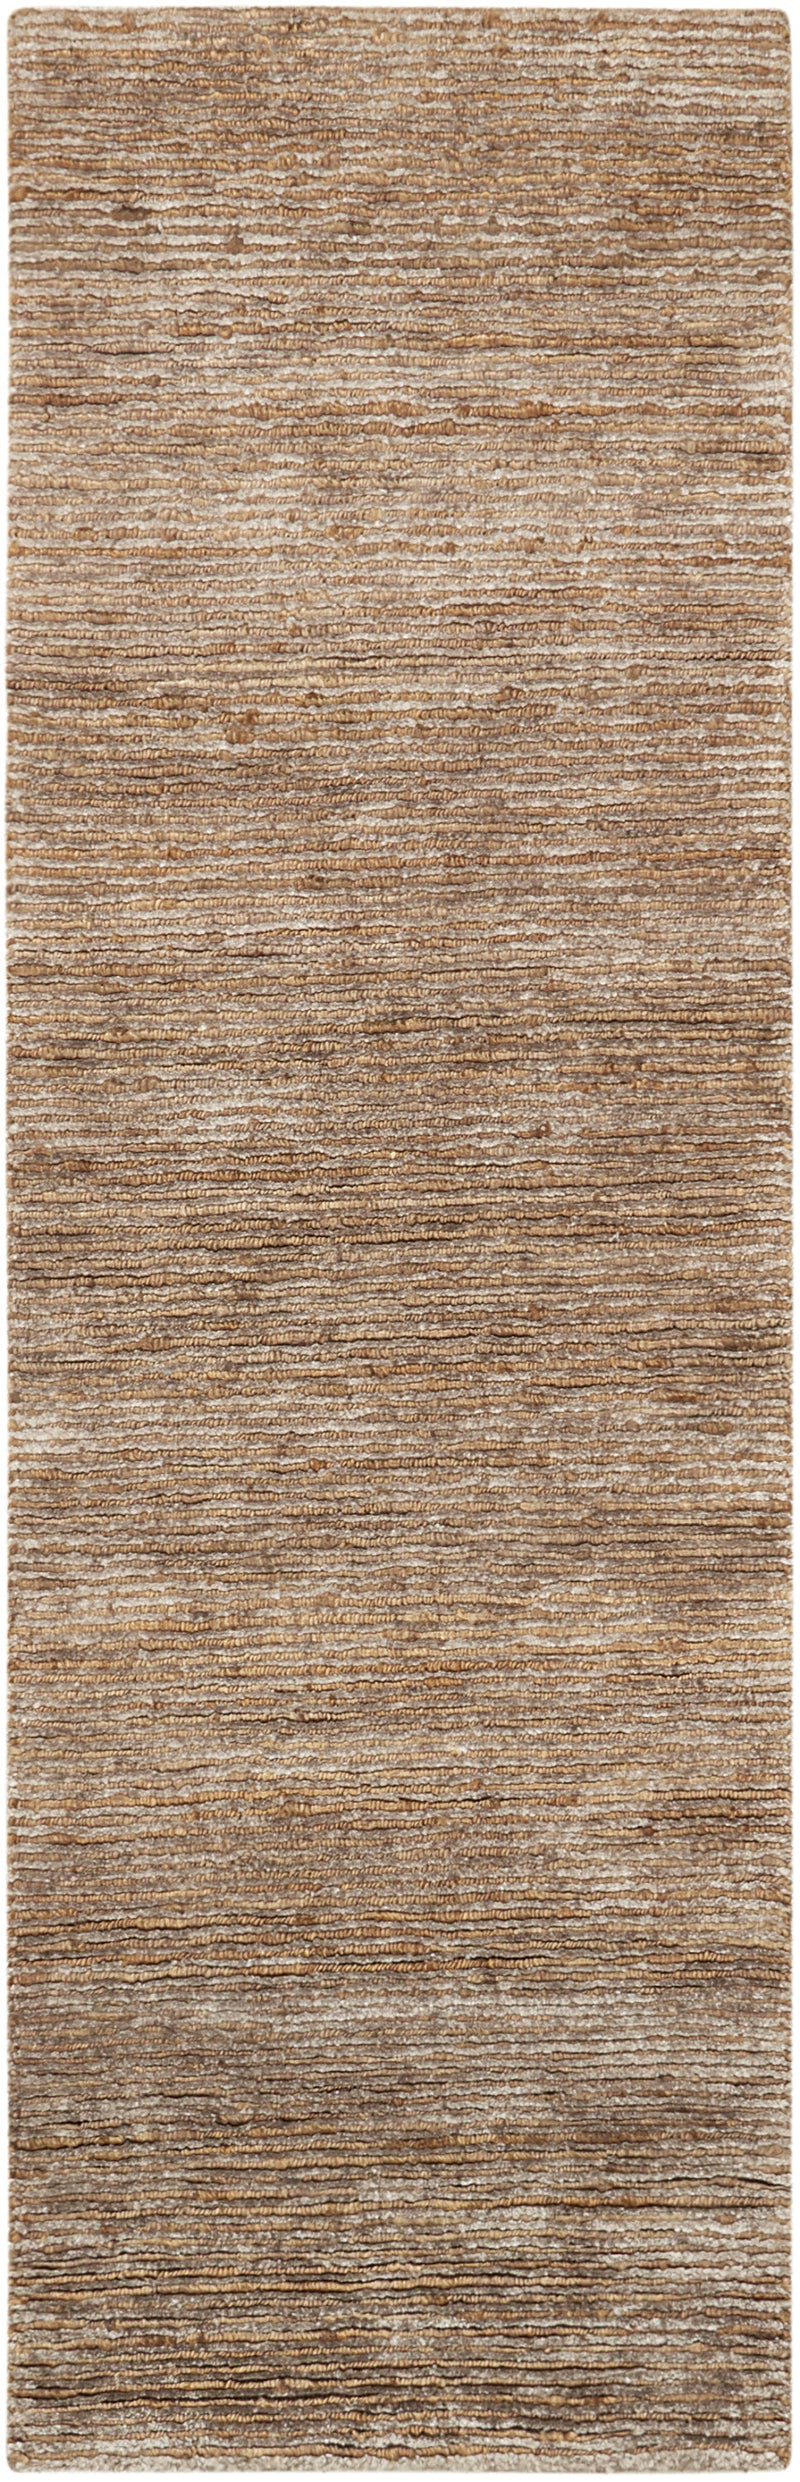 media image for mesa handmade amber rug by nourison 99446244871 redo 2 268